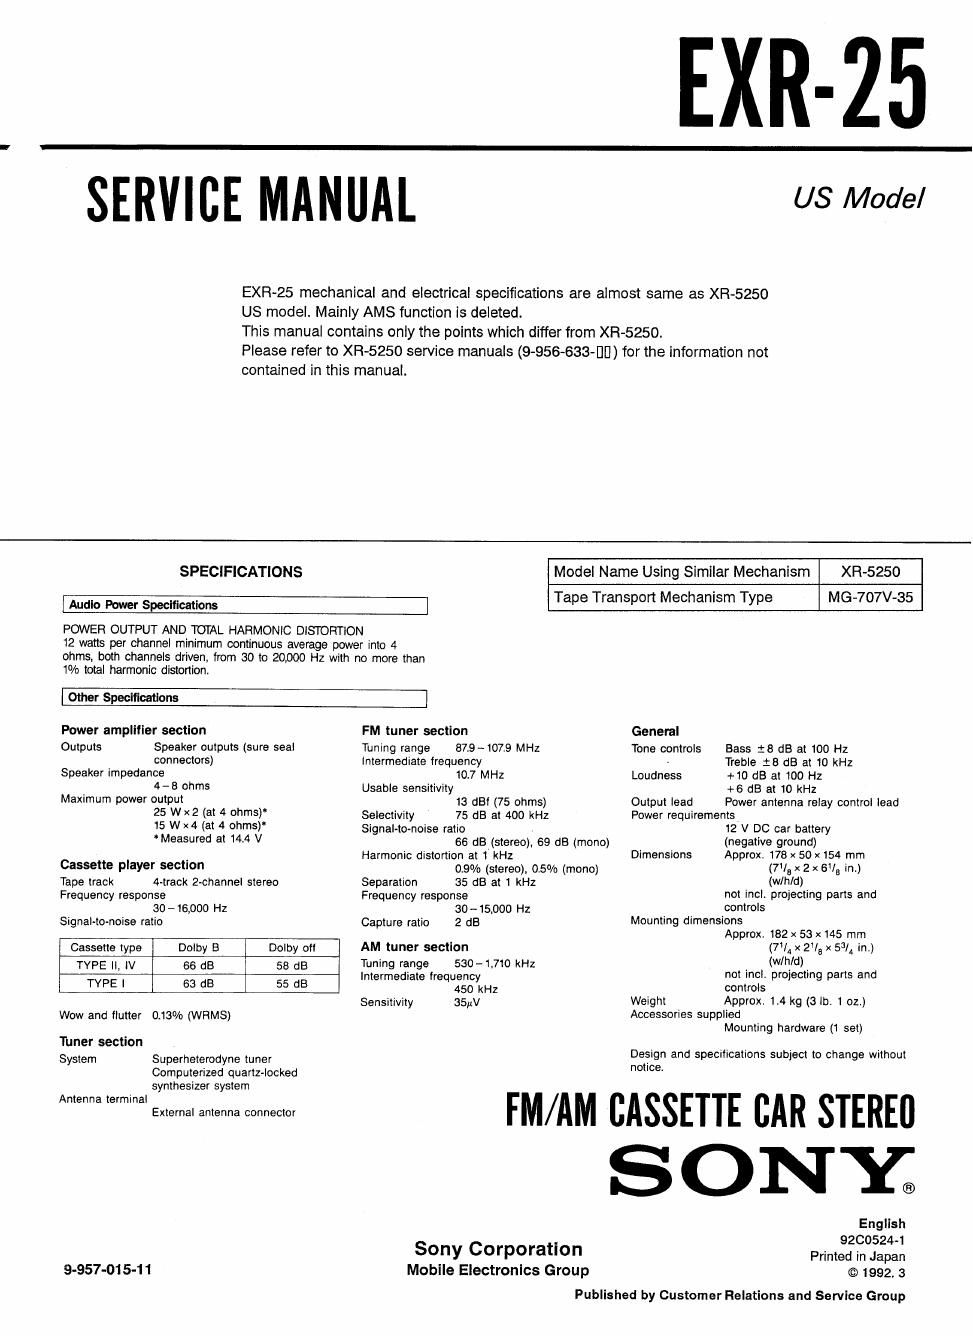 sony exr 25 service manual